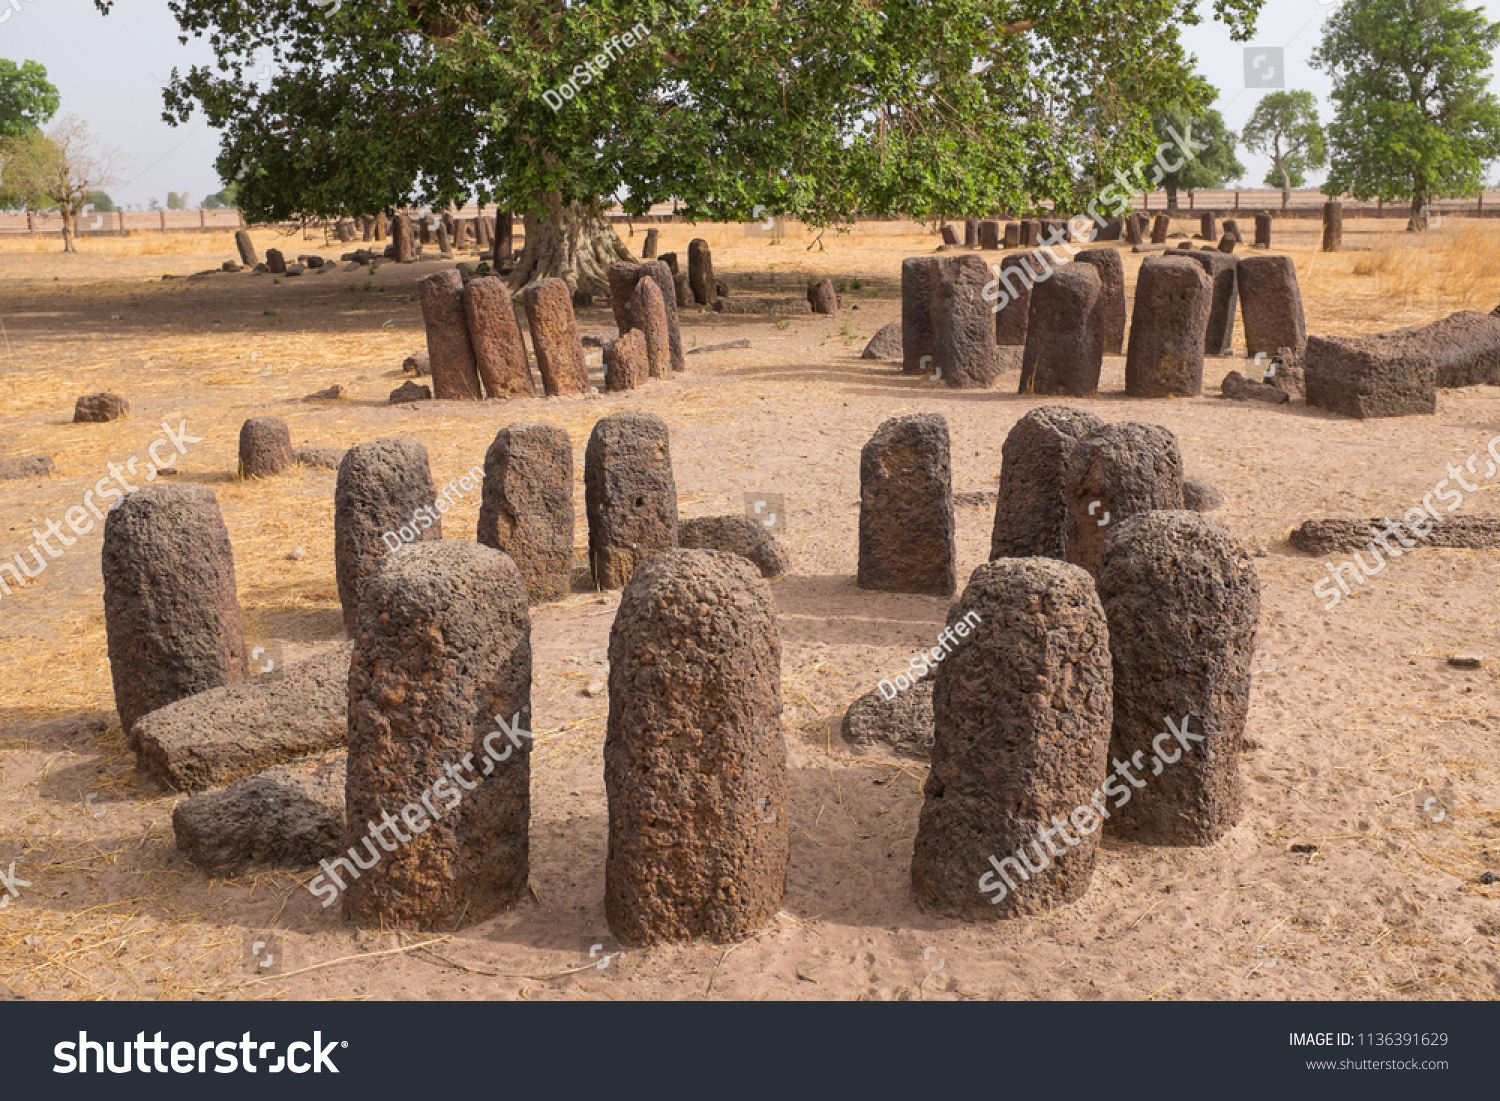 Senegambian Stone Circles at Sine Ngayene #1136391629